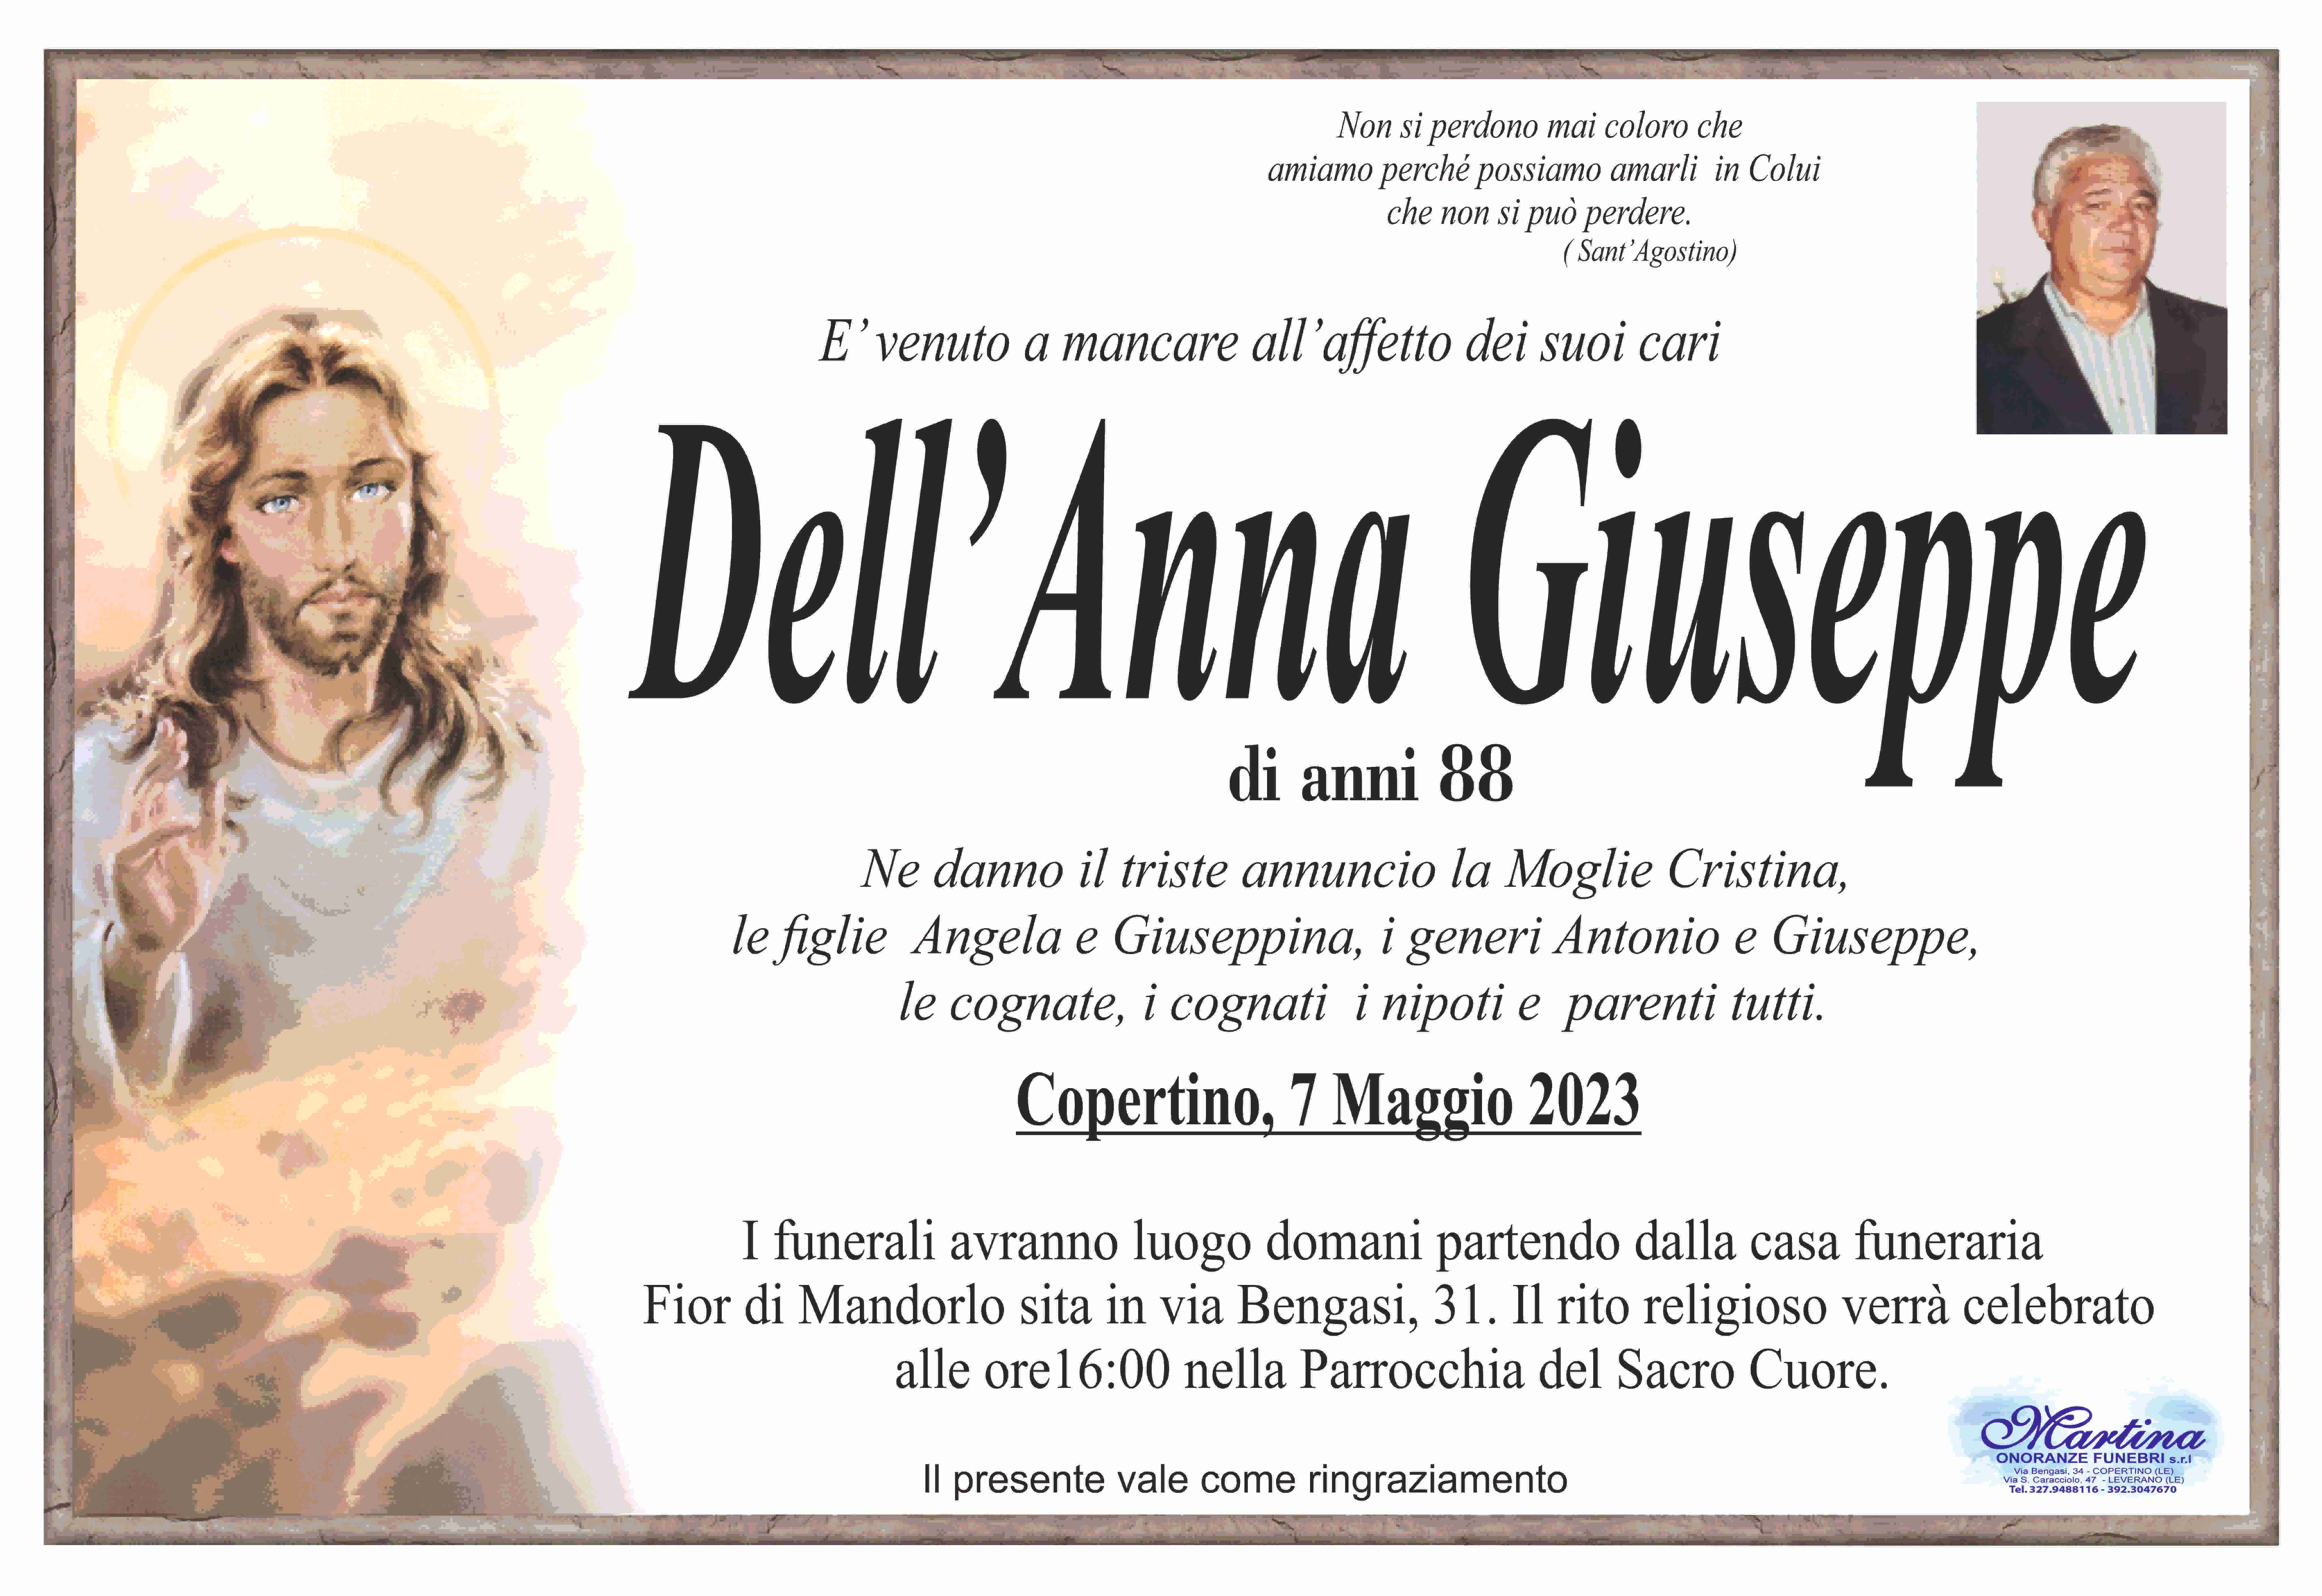 Giuseppe Dell'Anna